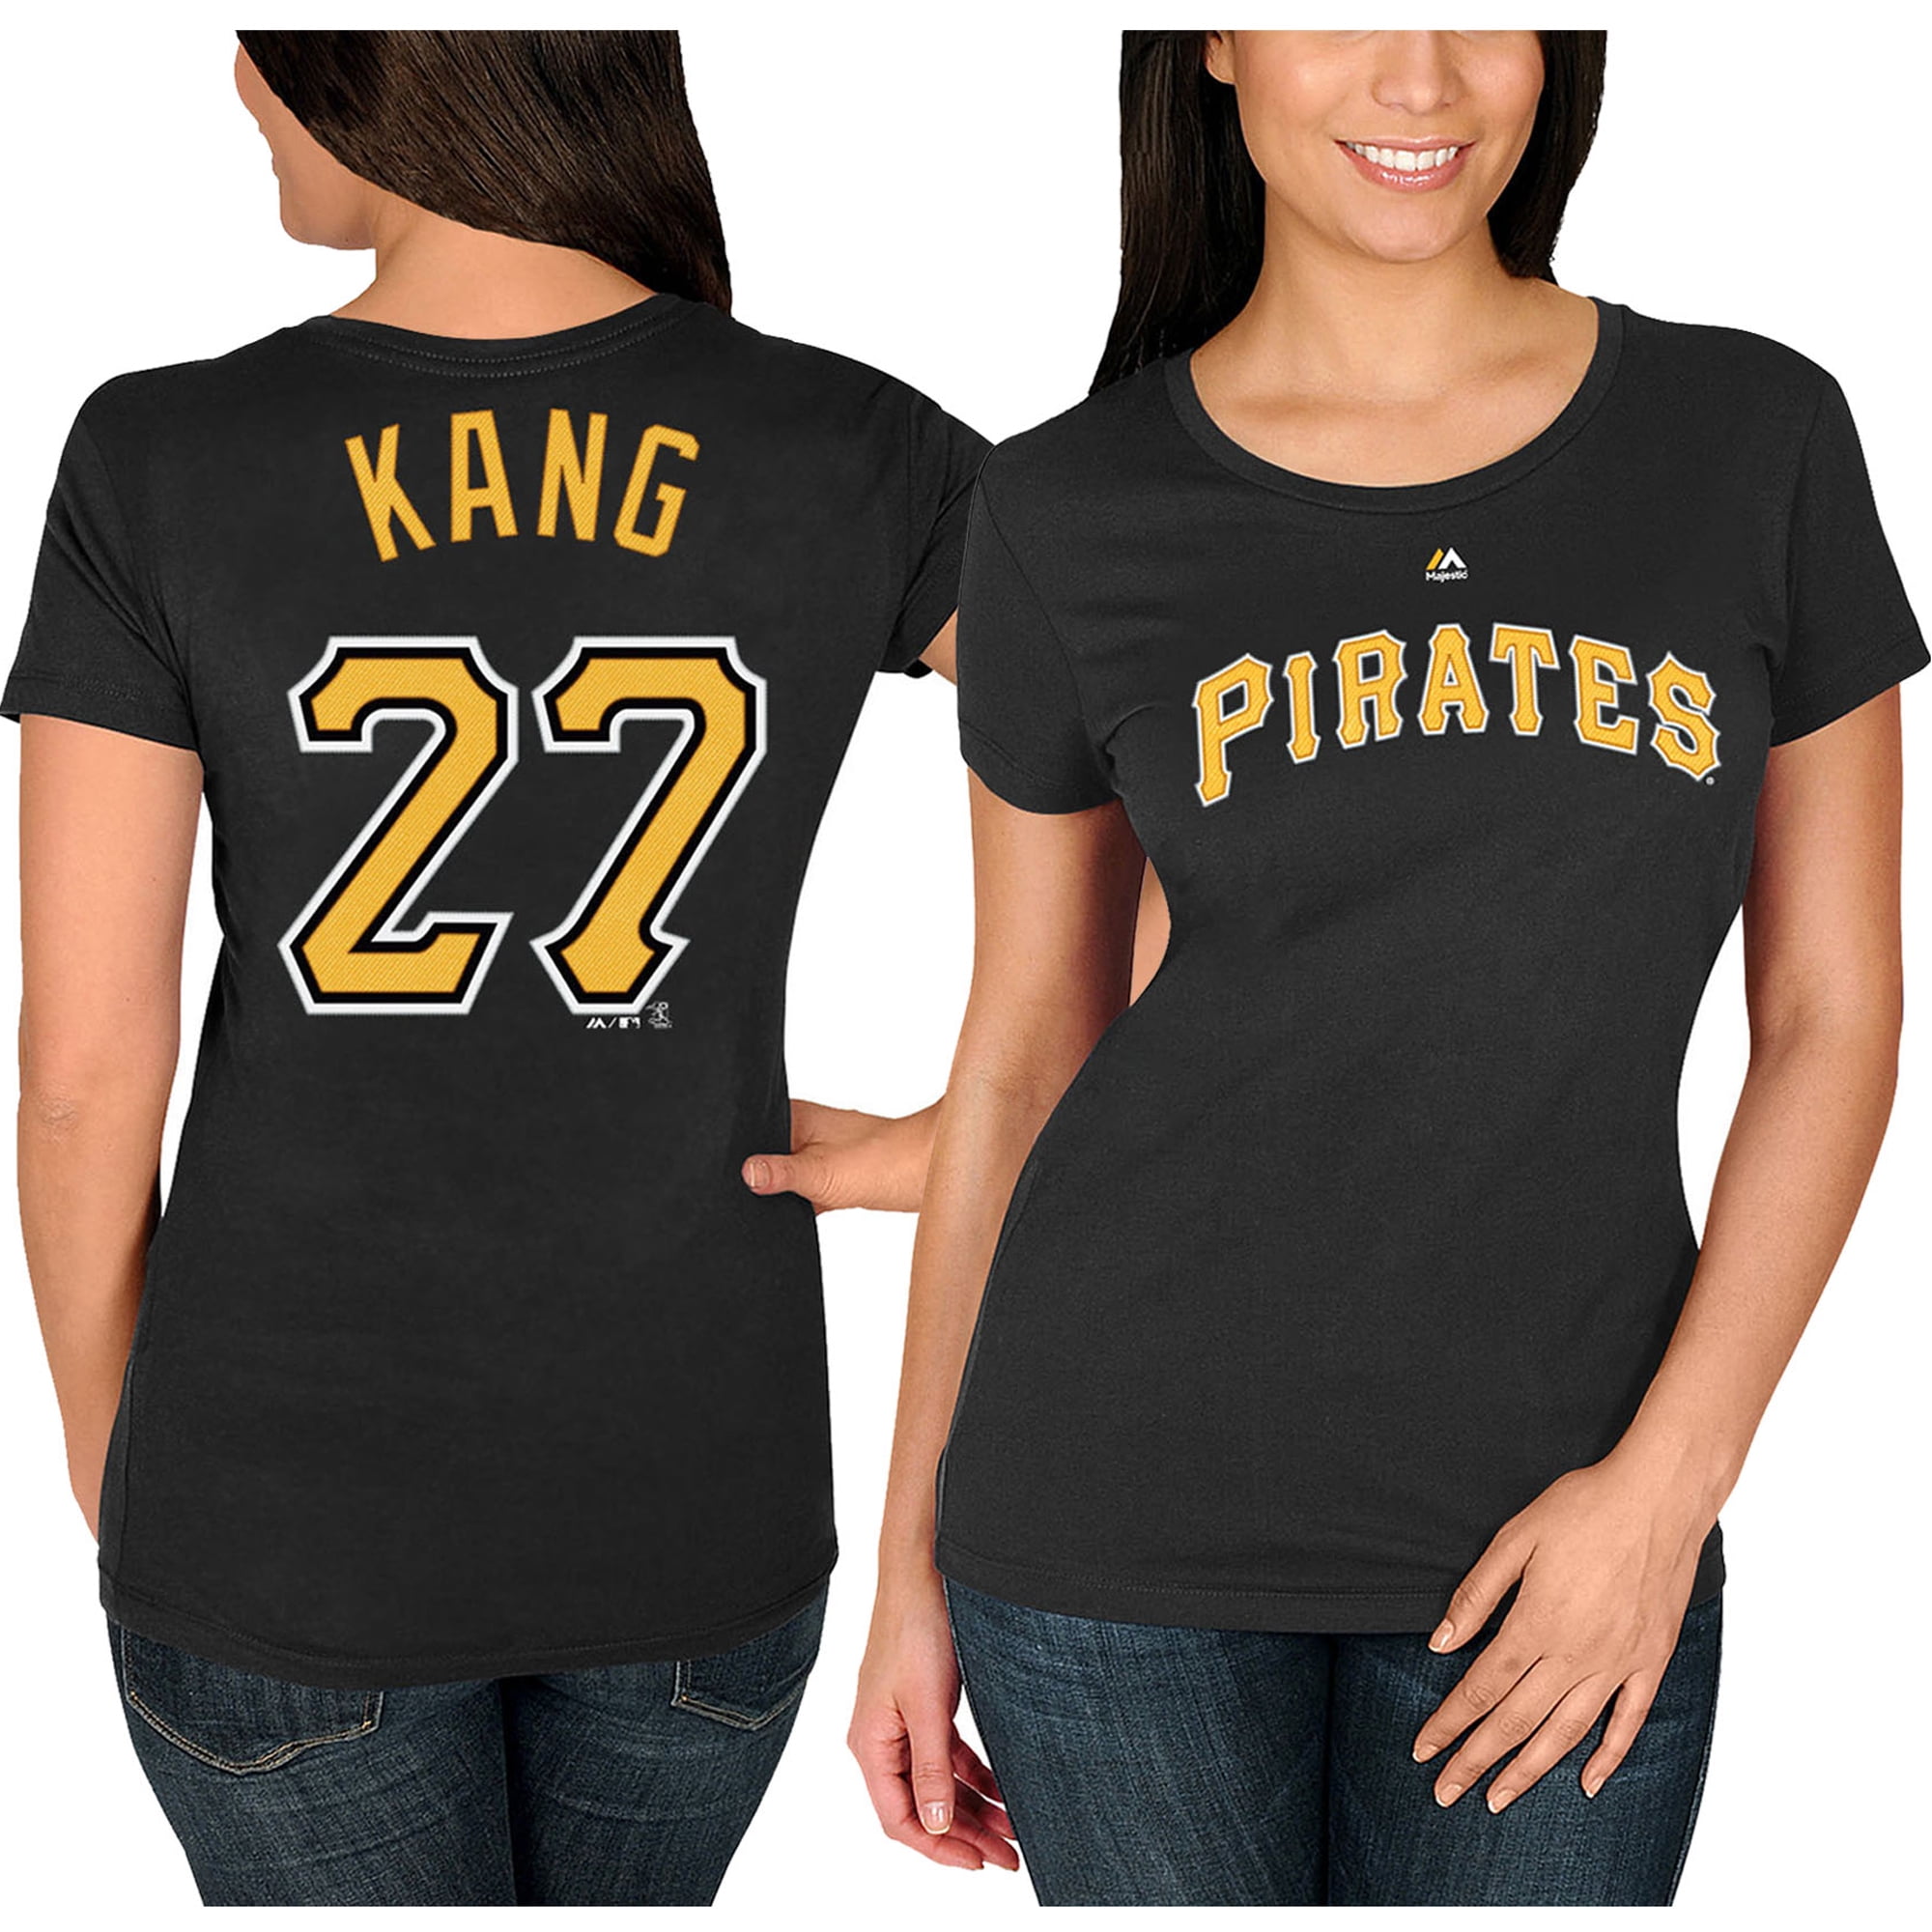 pirates kang shirt